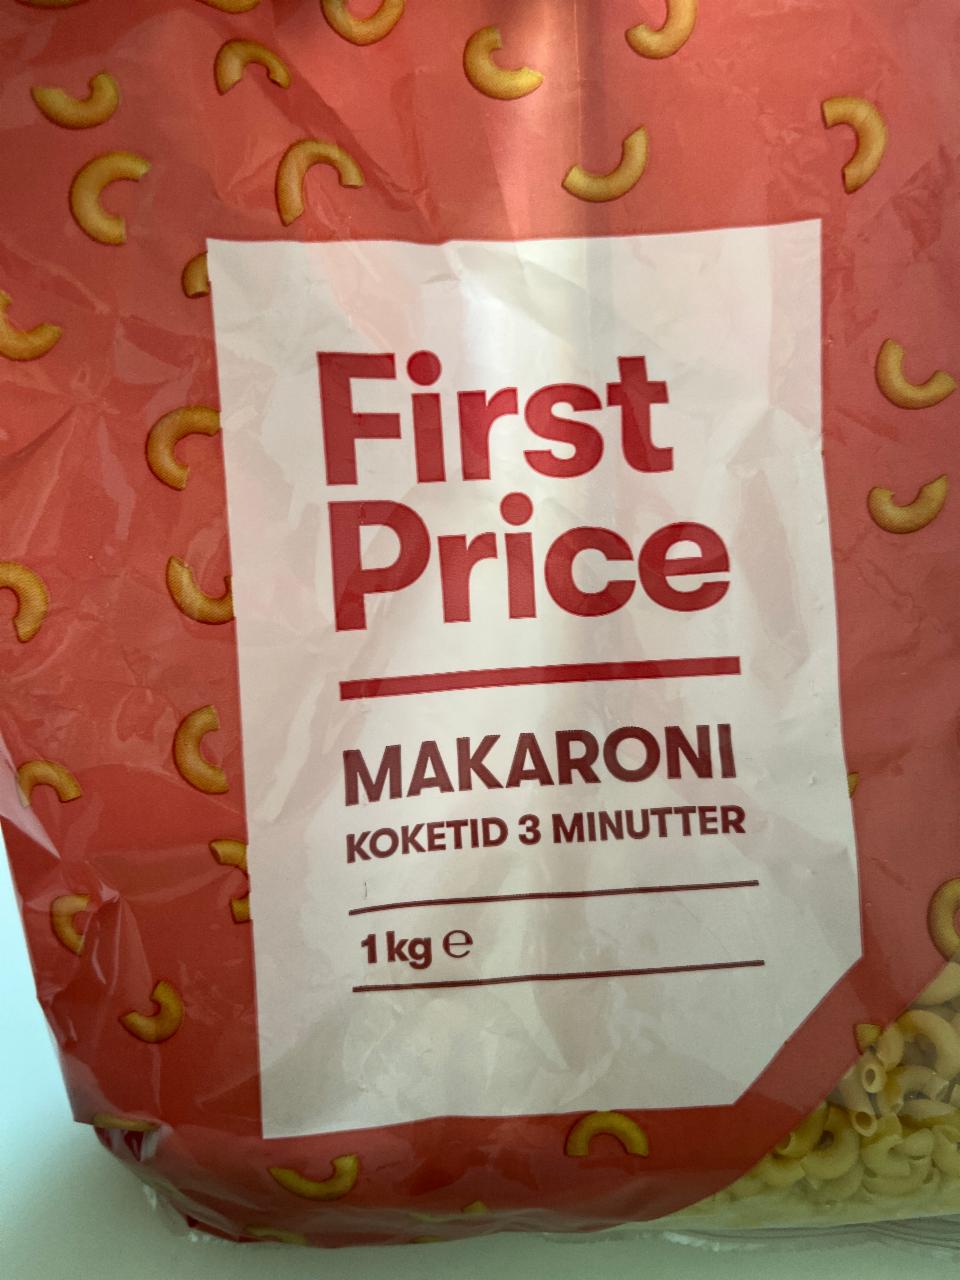 Фото - Макарони First price